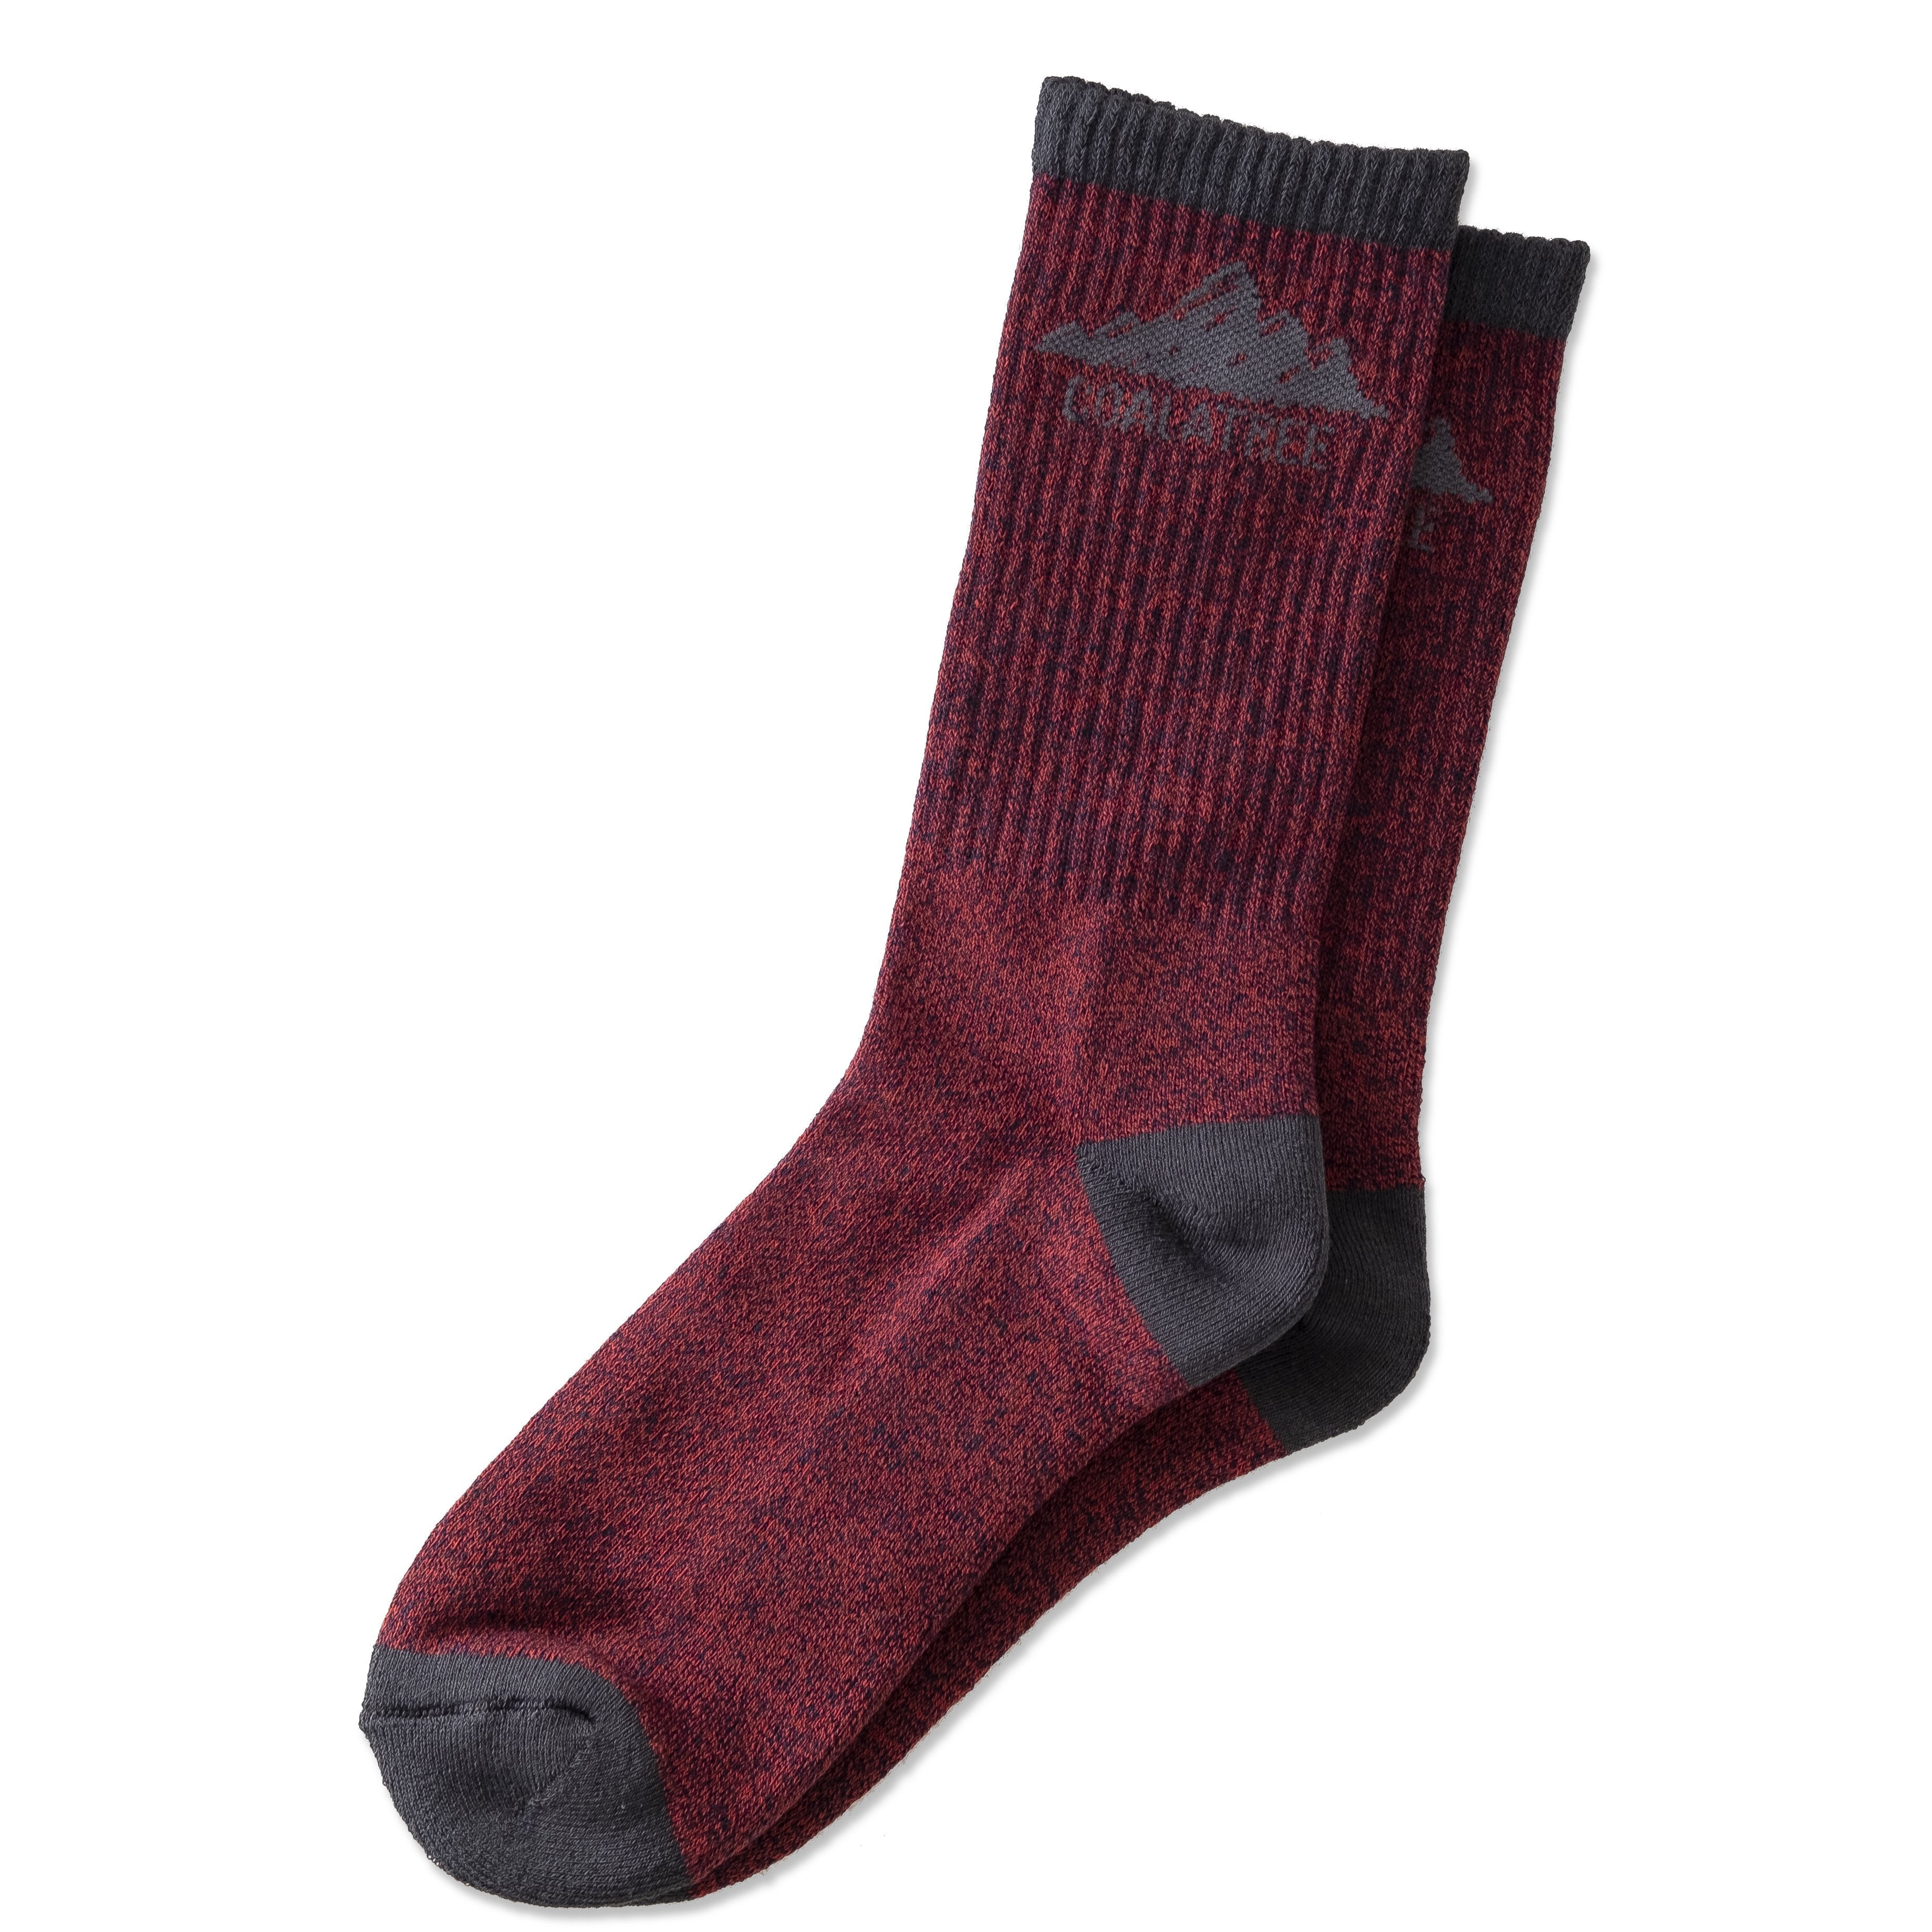 Colored java socks